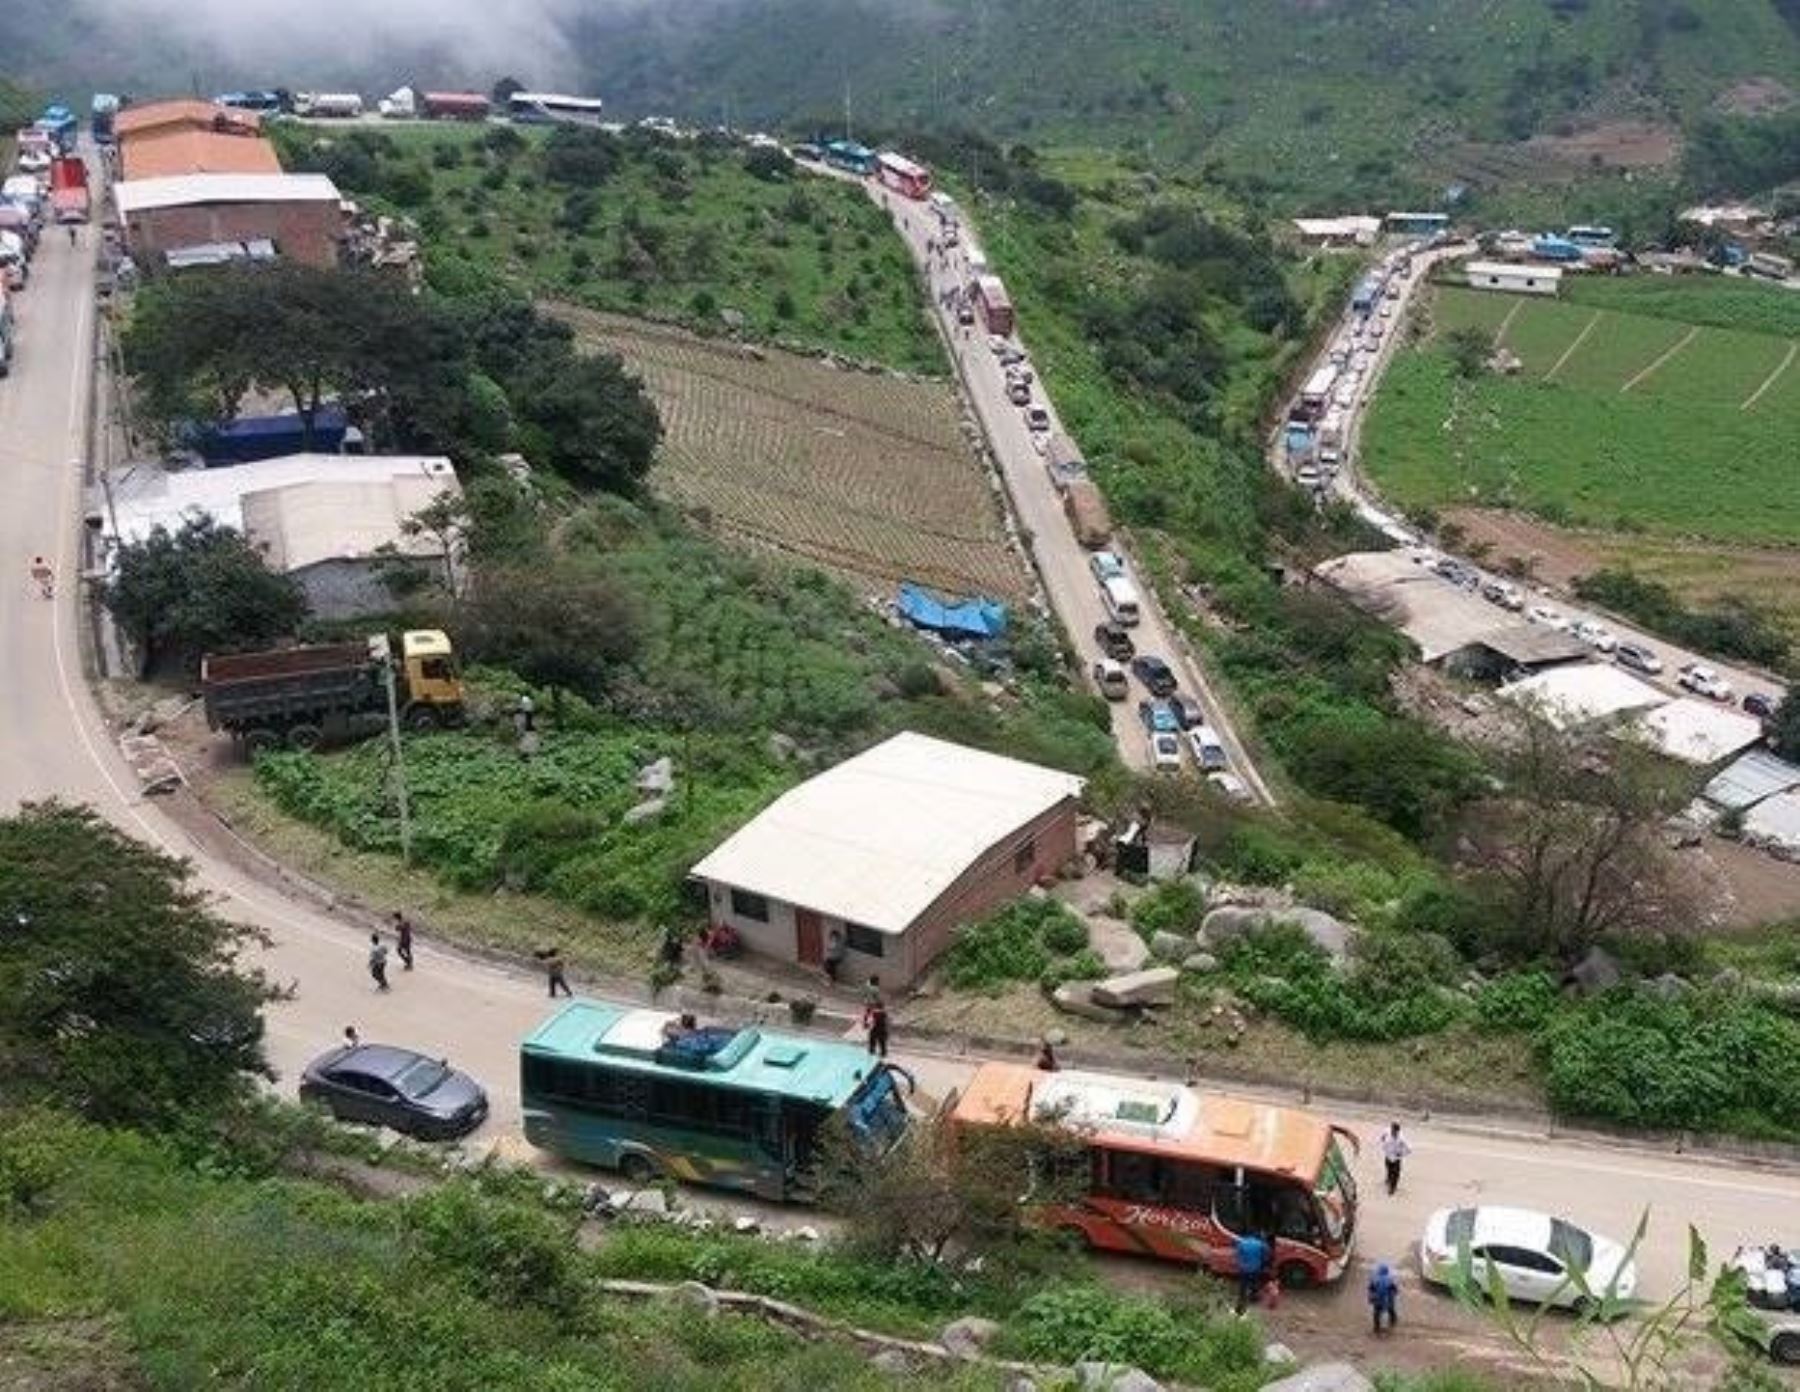 El MTC anunció el inicio de la obra de asfaltado de la carretera Santiago de Chuco-Mollepata-Pallasca, región La Libertad. ANDINA/Difusión